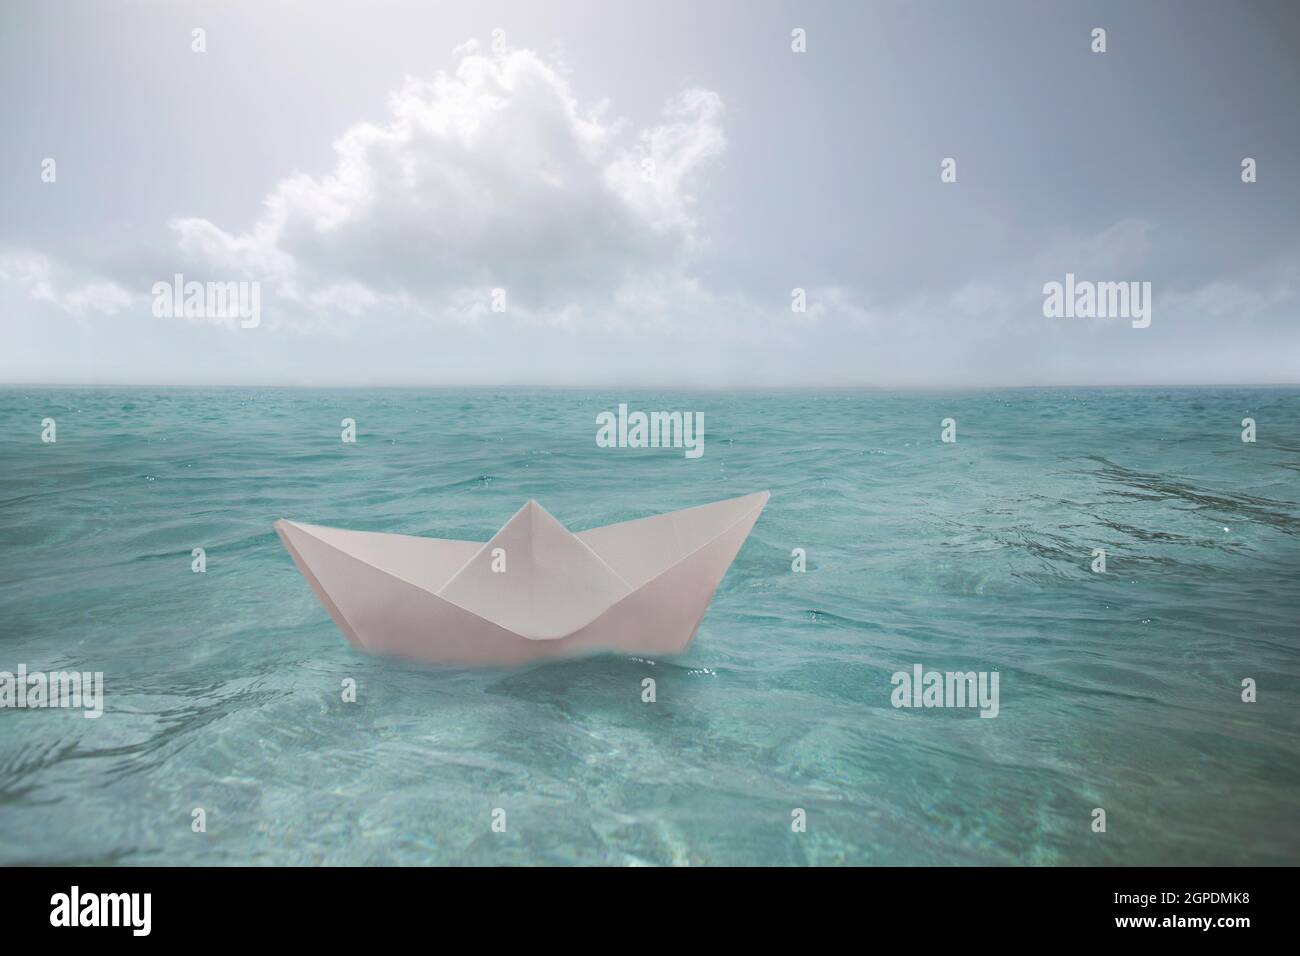 le bateau en papier surréaliste voyage seul dans l'océan infini Banque D'Images